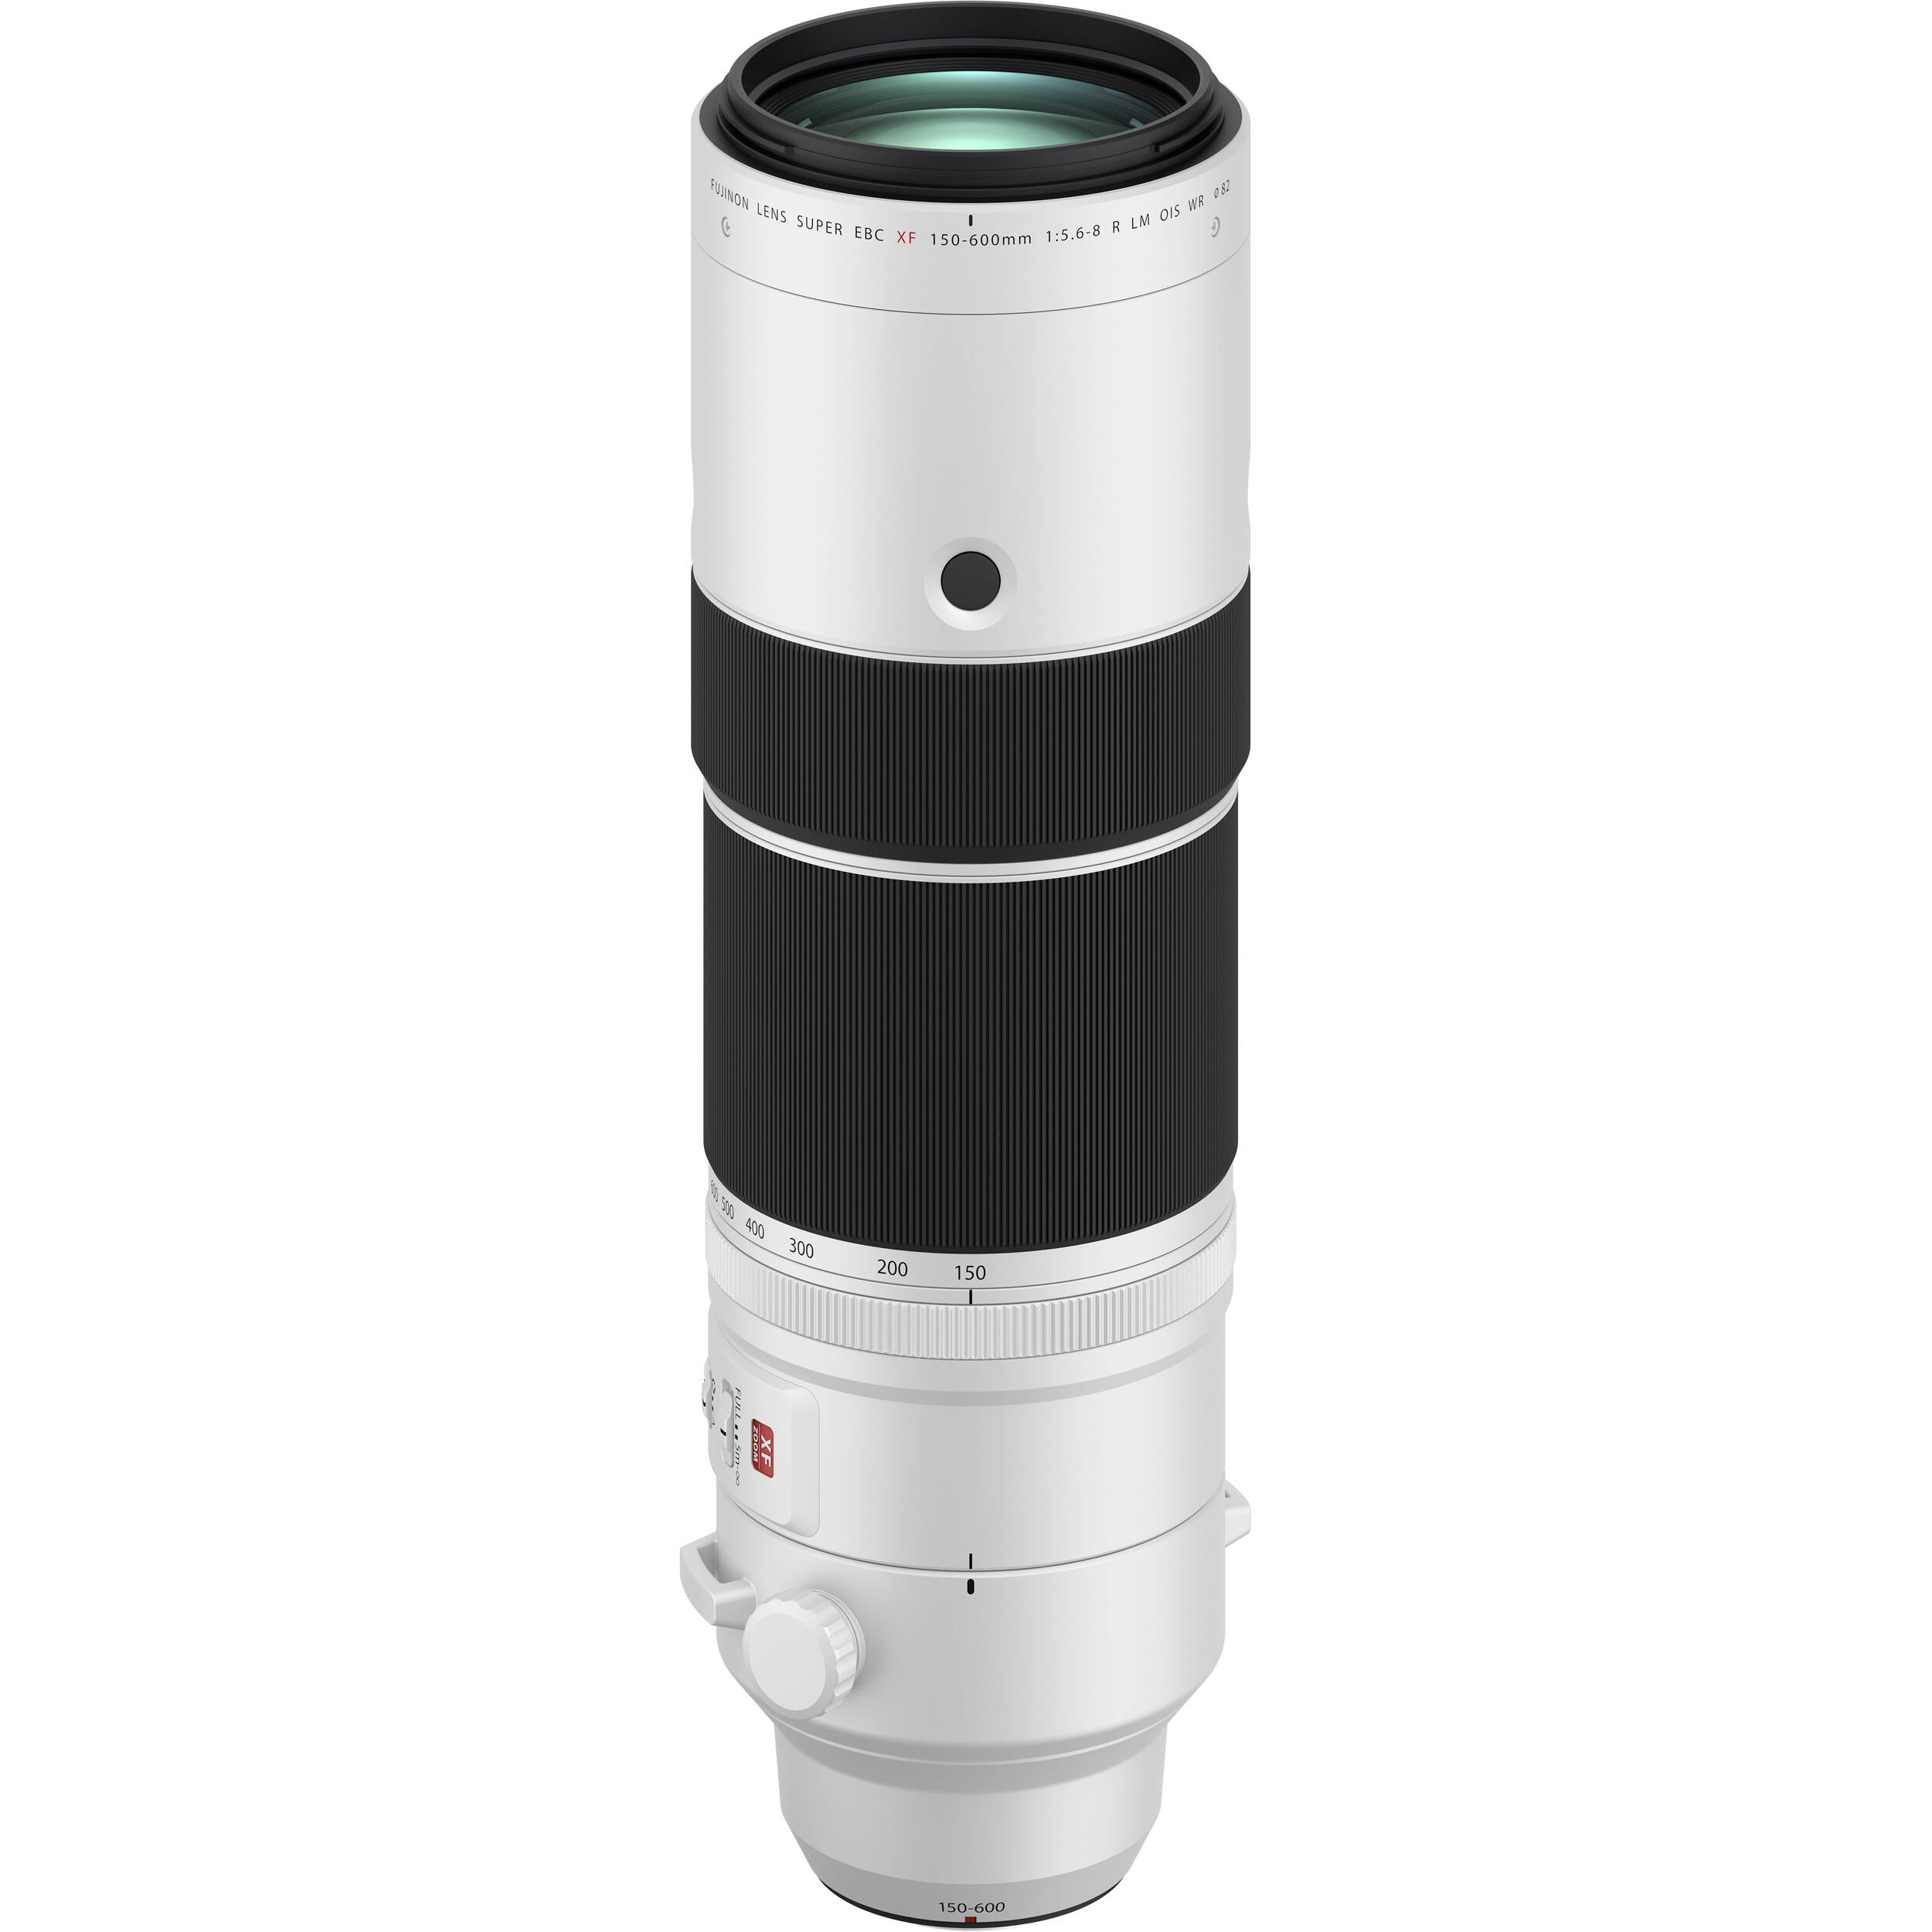 Fujifilm XF 150-600mm là chiếc ống kính zoom siêu tele với thiết kế cân bằng độc đáo giữa khả năng tầm nhìn vừa xa vừa rộng